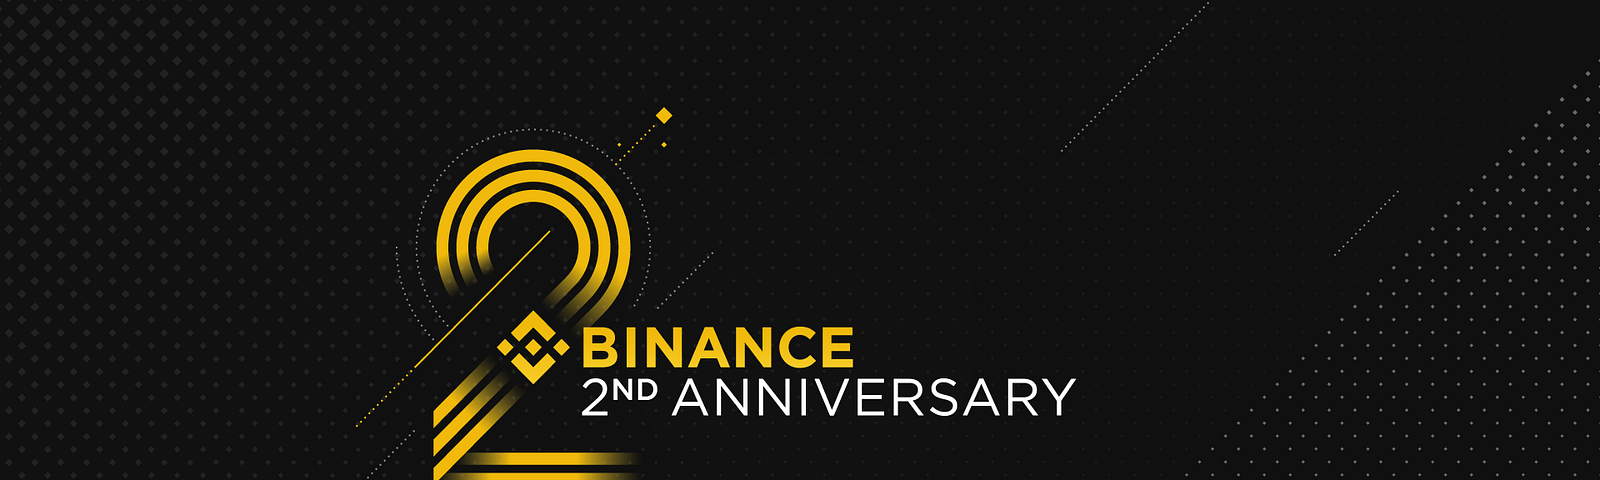 Happy 2nd Anniversary Binance #BinanceTurns2